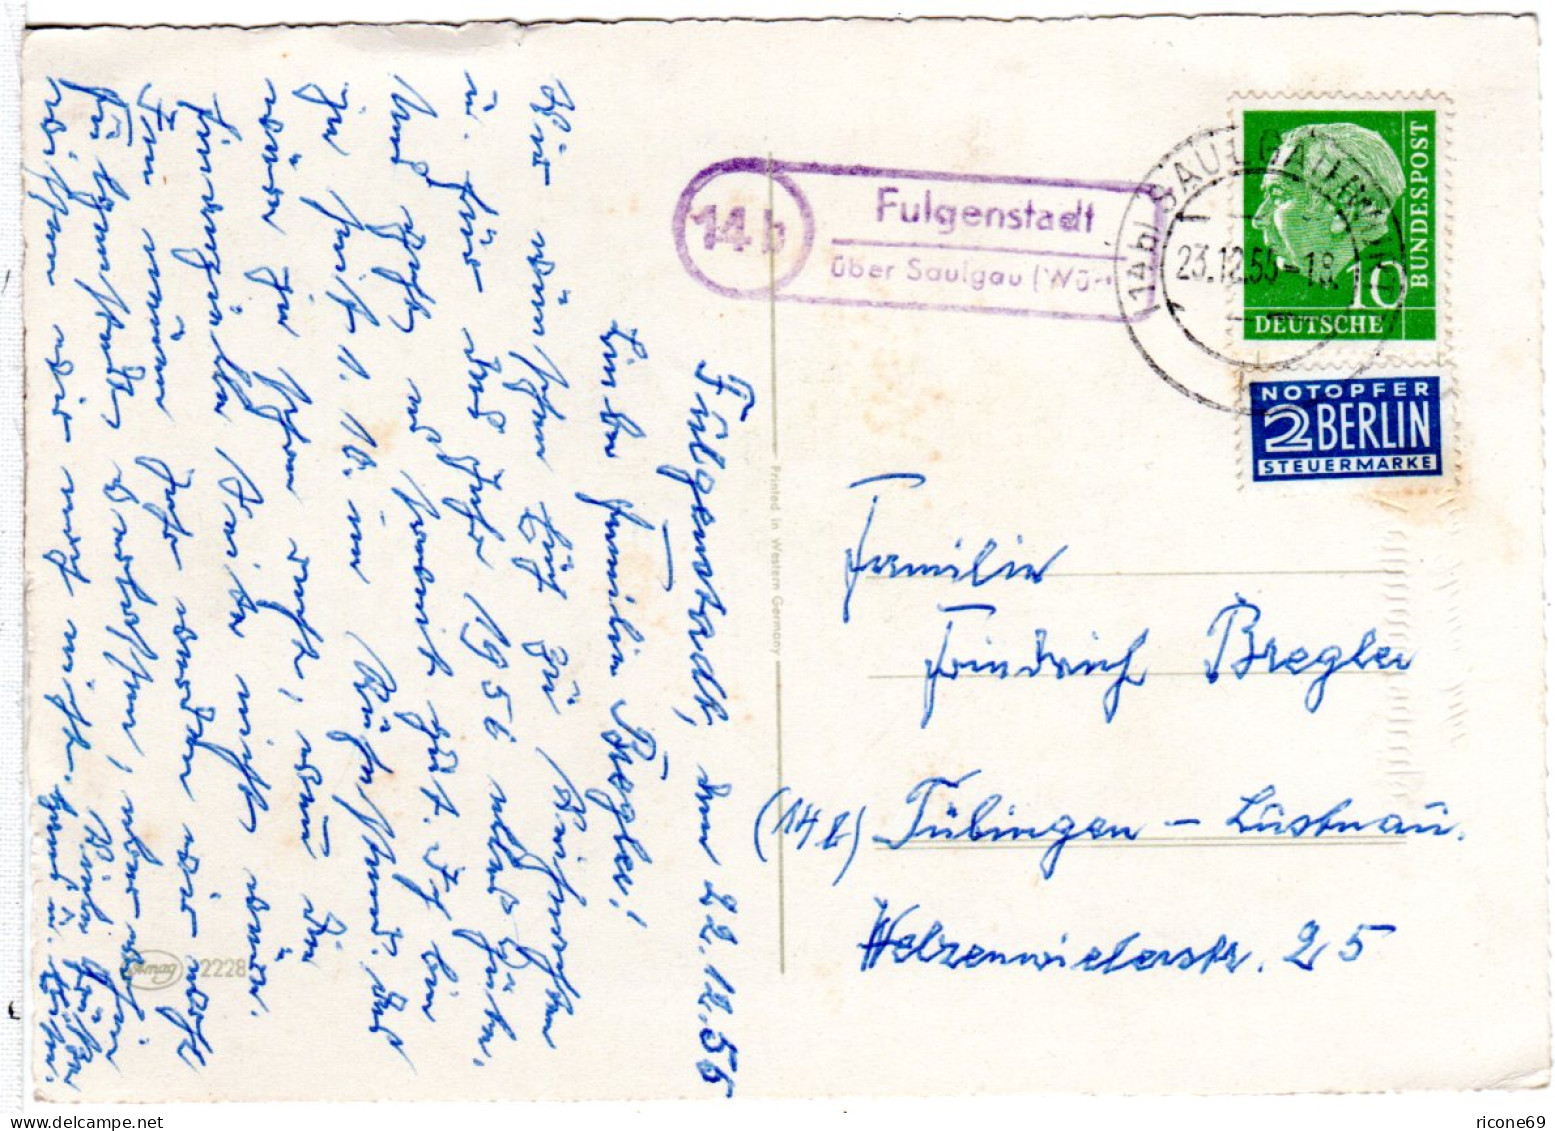 BRD 1955, Landpost Stempel 14b FULGENSTADT über Saulgau Auf Karte M. 10 Pf.  - Sammlungen